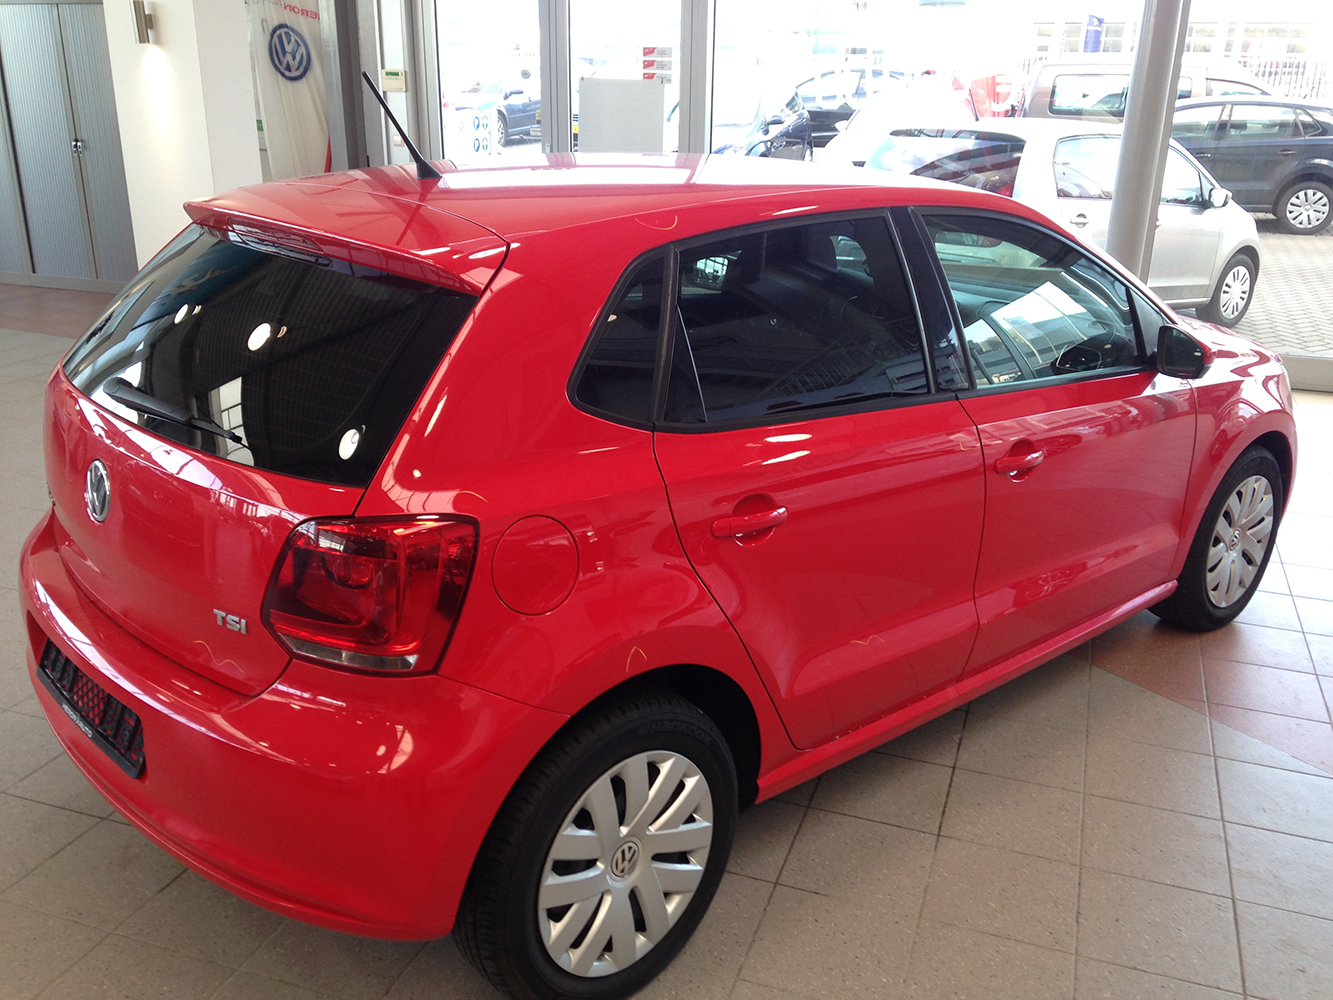 Volkswagen Polo rood blindering ramen